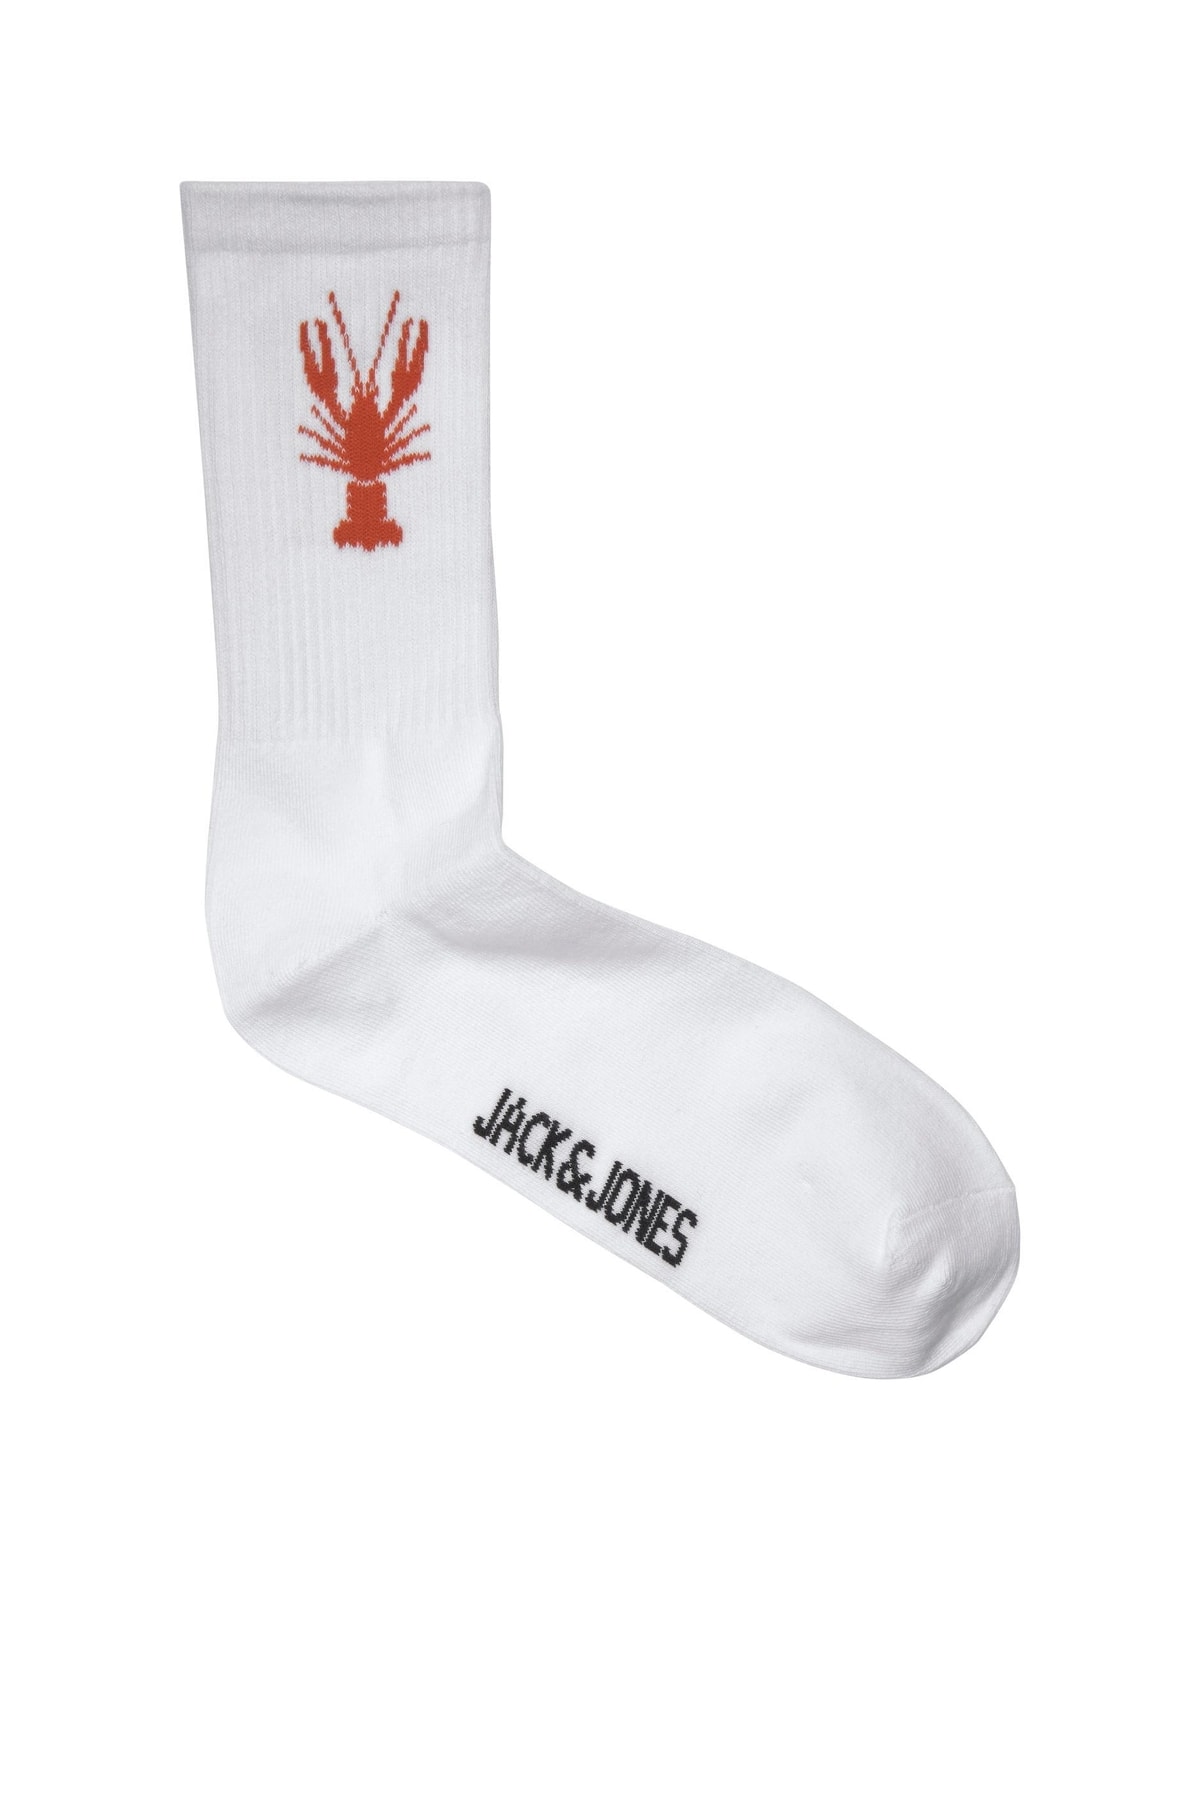 Jack & Jones Positano Tennis Sock Erkek Kırmızı Çorap 12210542-17